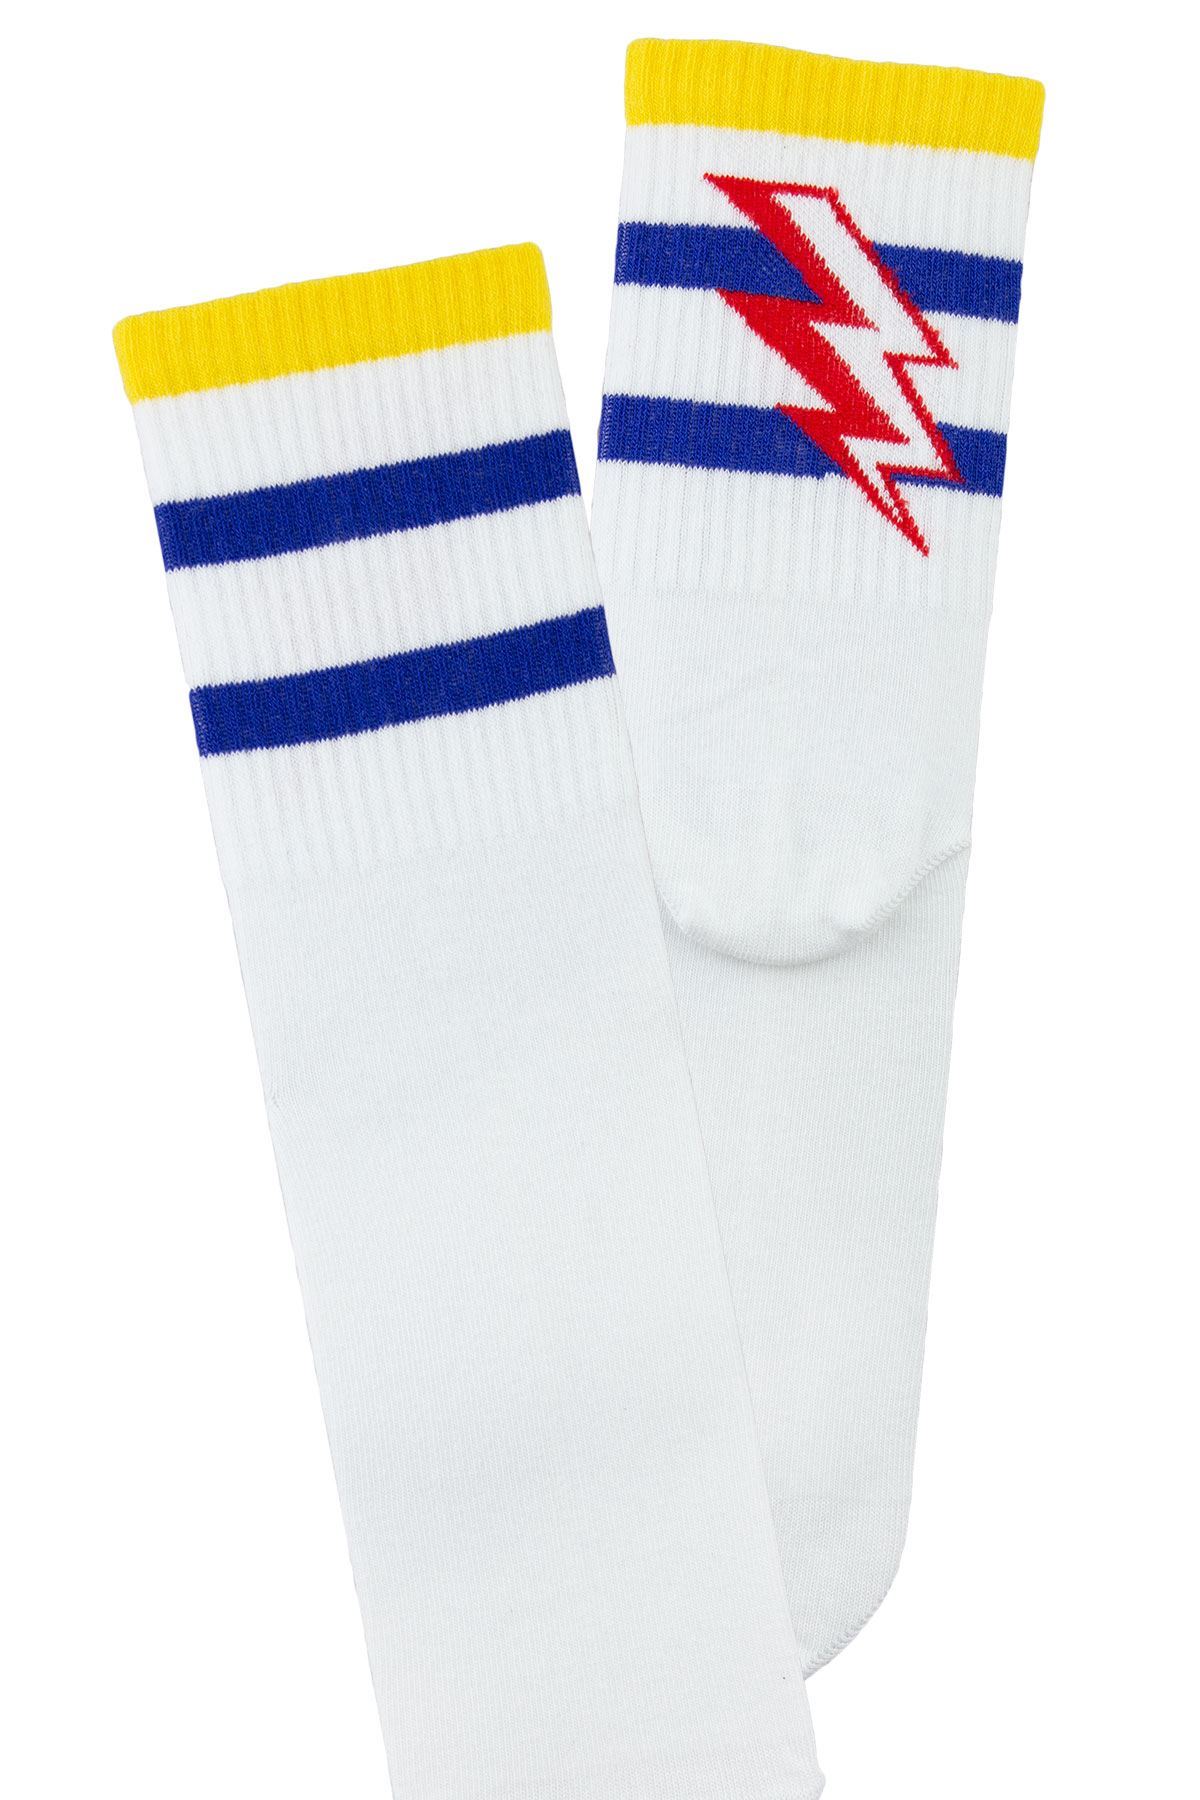 MAN MID-CALF SOCKS SPORT FLASH PATTERNED Buy Branded Wholesale Socks Online At Bulkybross!